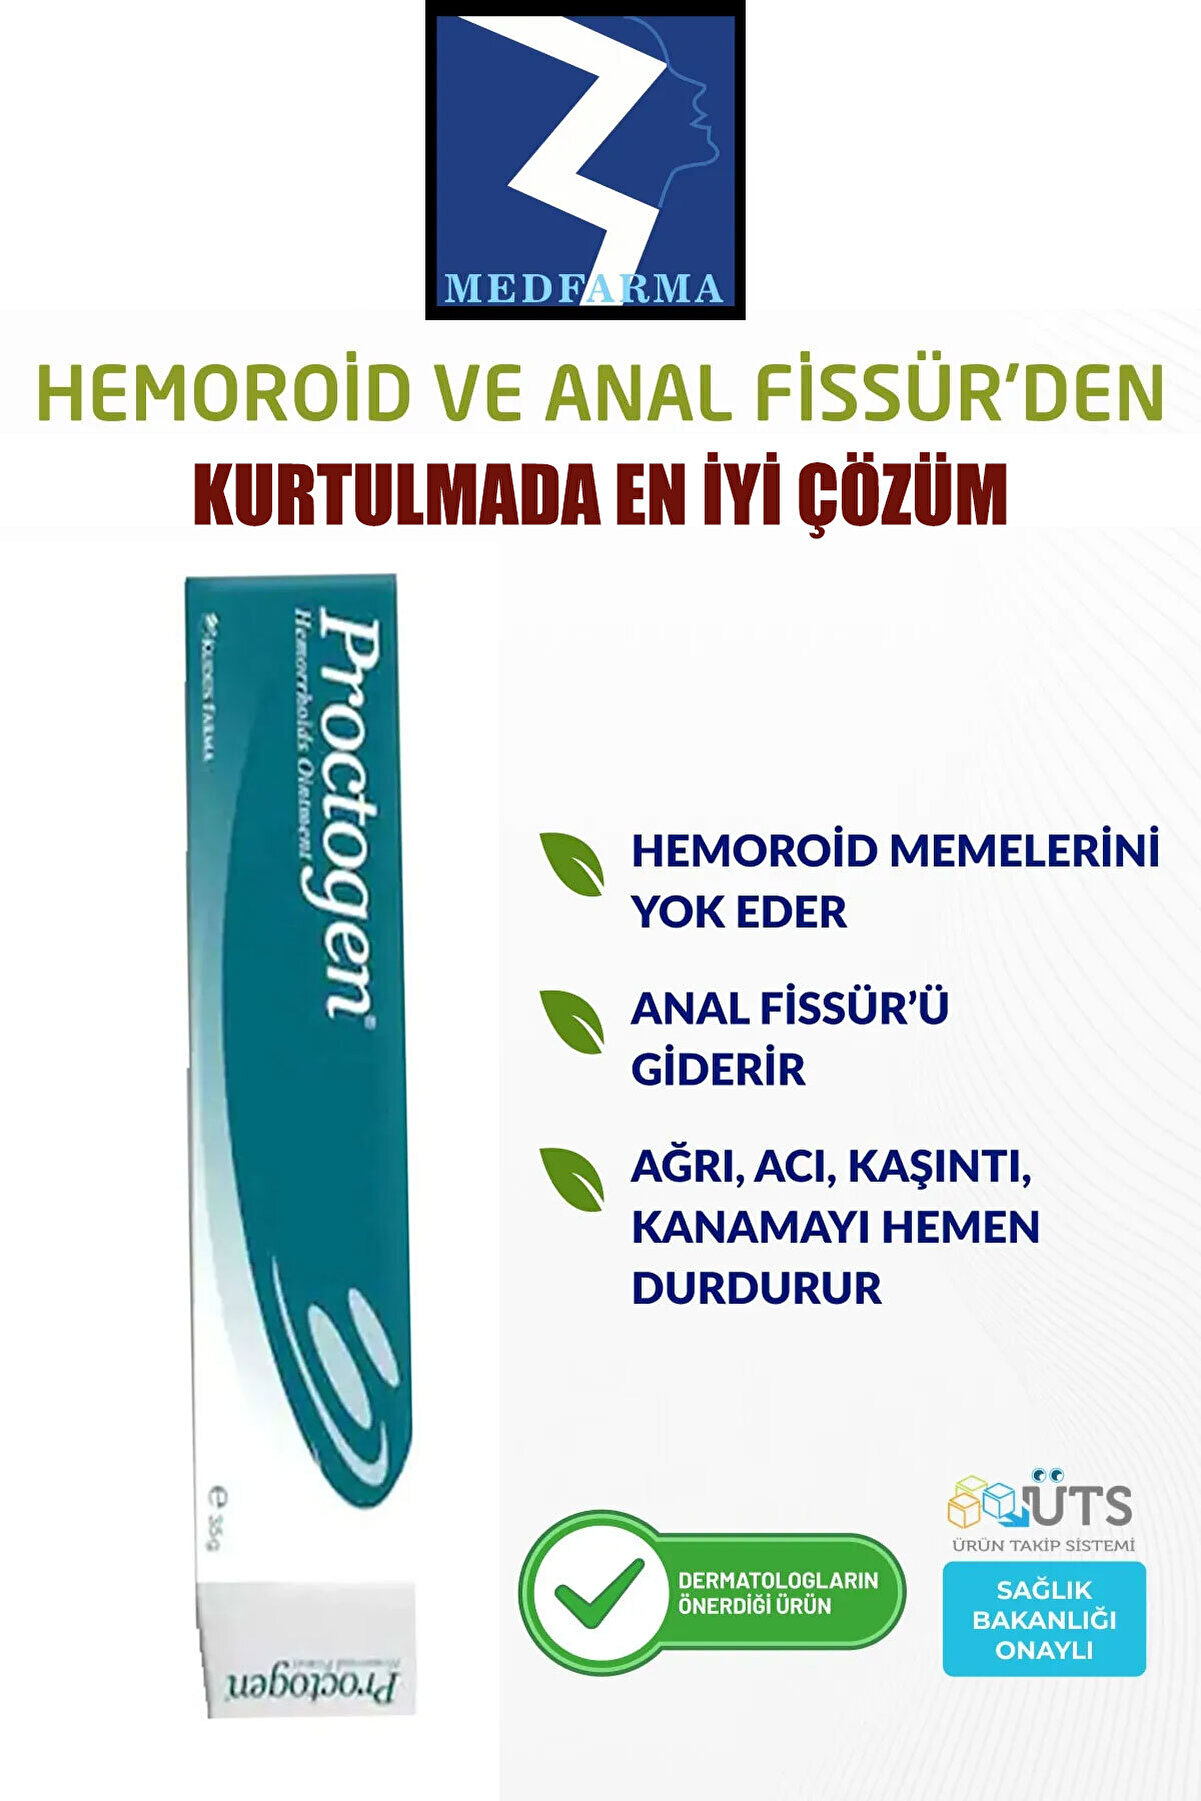 PROCTOGEN Hemoroid ( Basur) Ve Fissür Onarıcı Bitkisel Krem